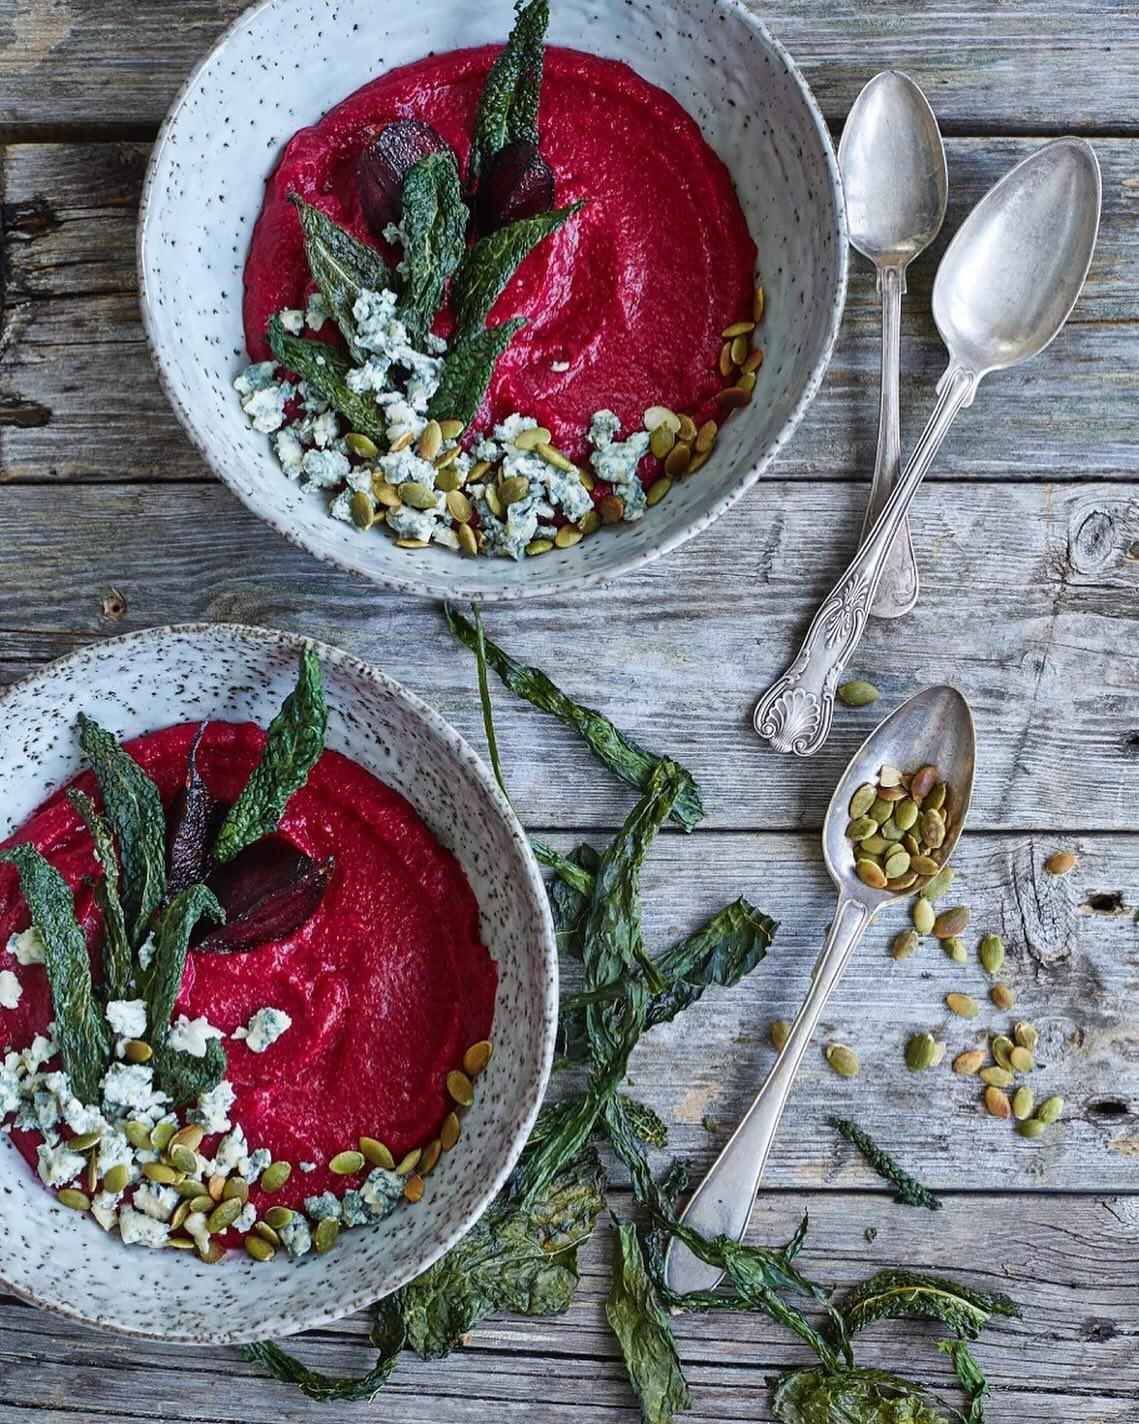 Rödbets­polenta ”bowl” med ädelost, pumpa­kärnor och svartkåls­chips